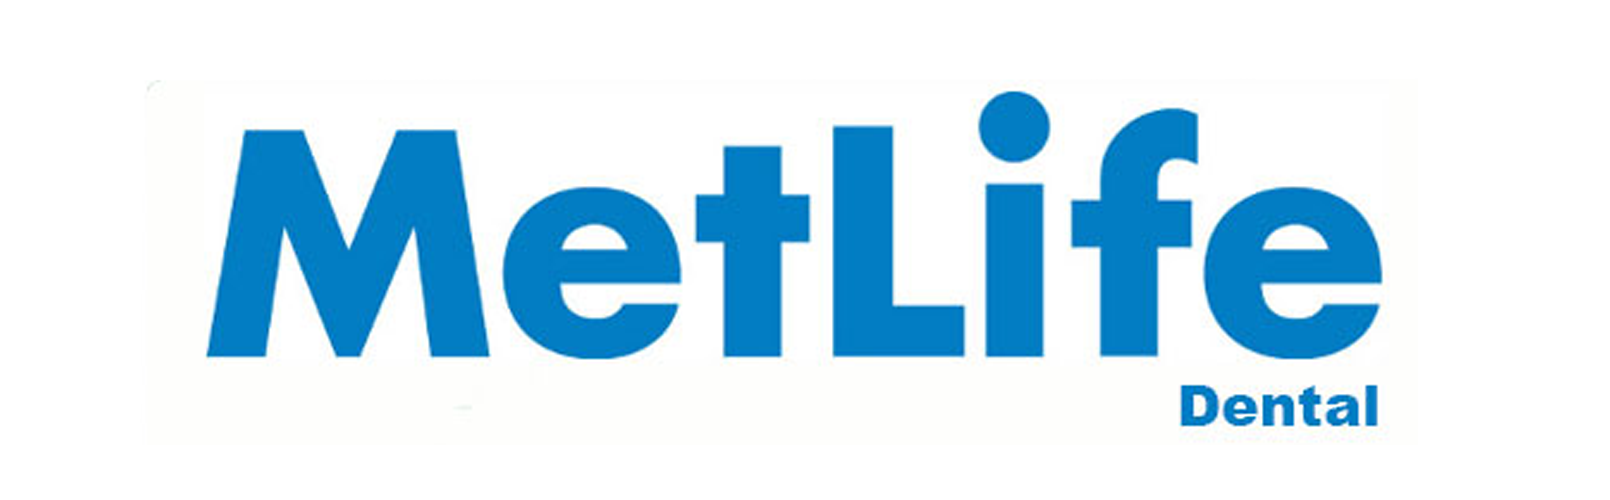 Metlife-Dental-Insurance